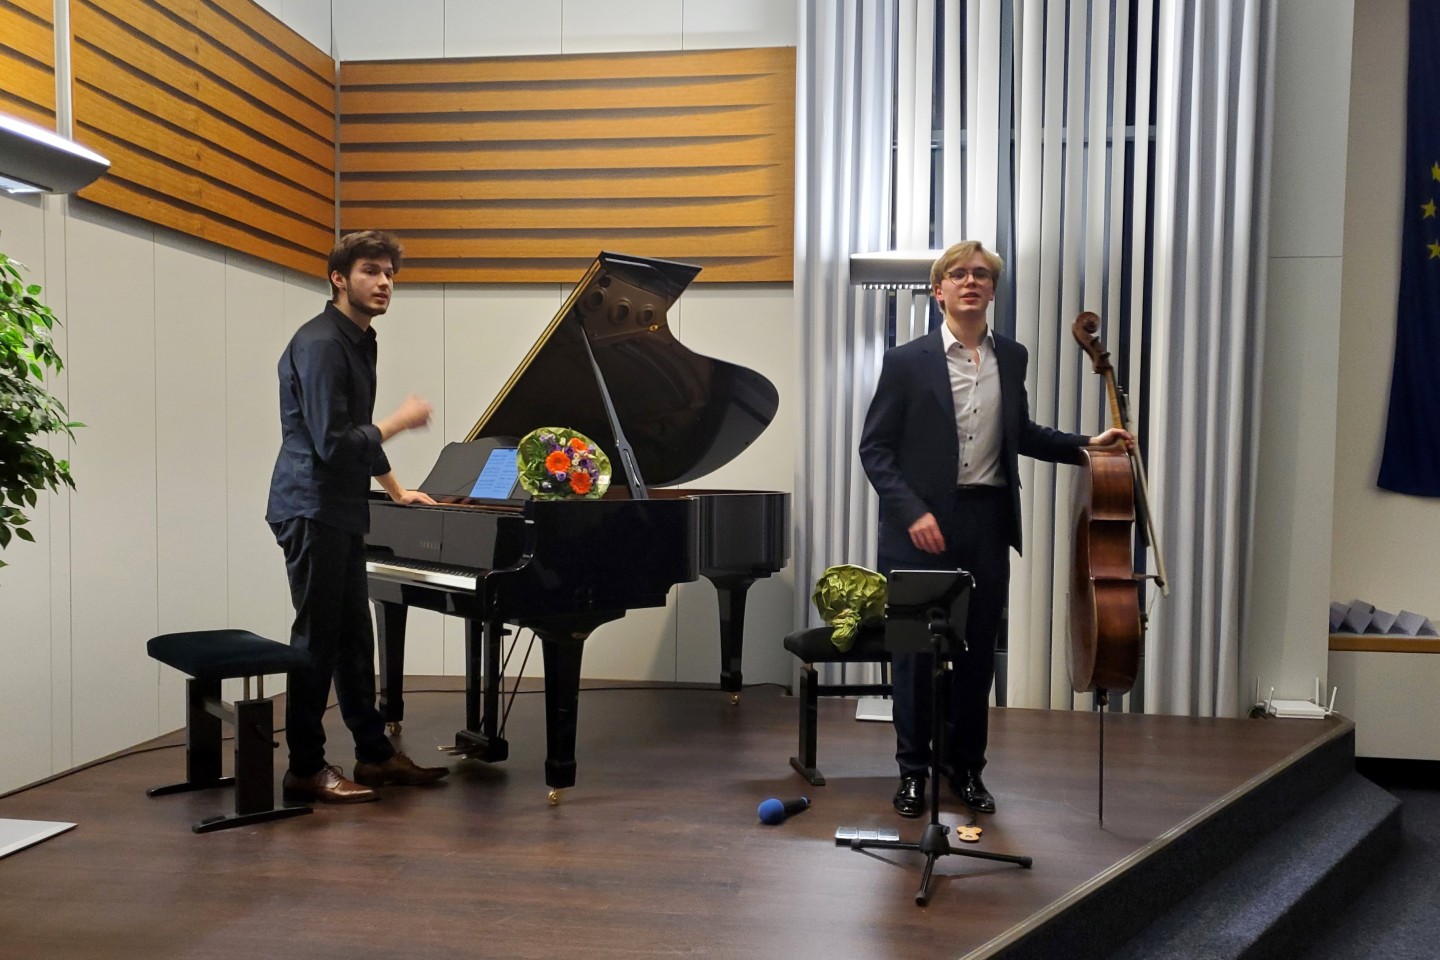 Die Künstler, der Pianist Robert Neumann und der Cellist Philipp Schupelius begeistern